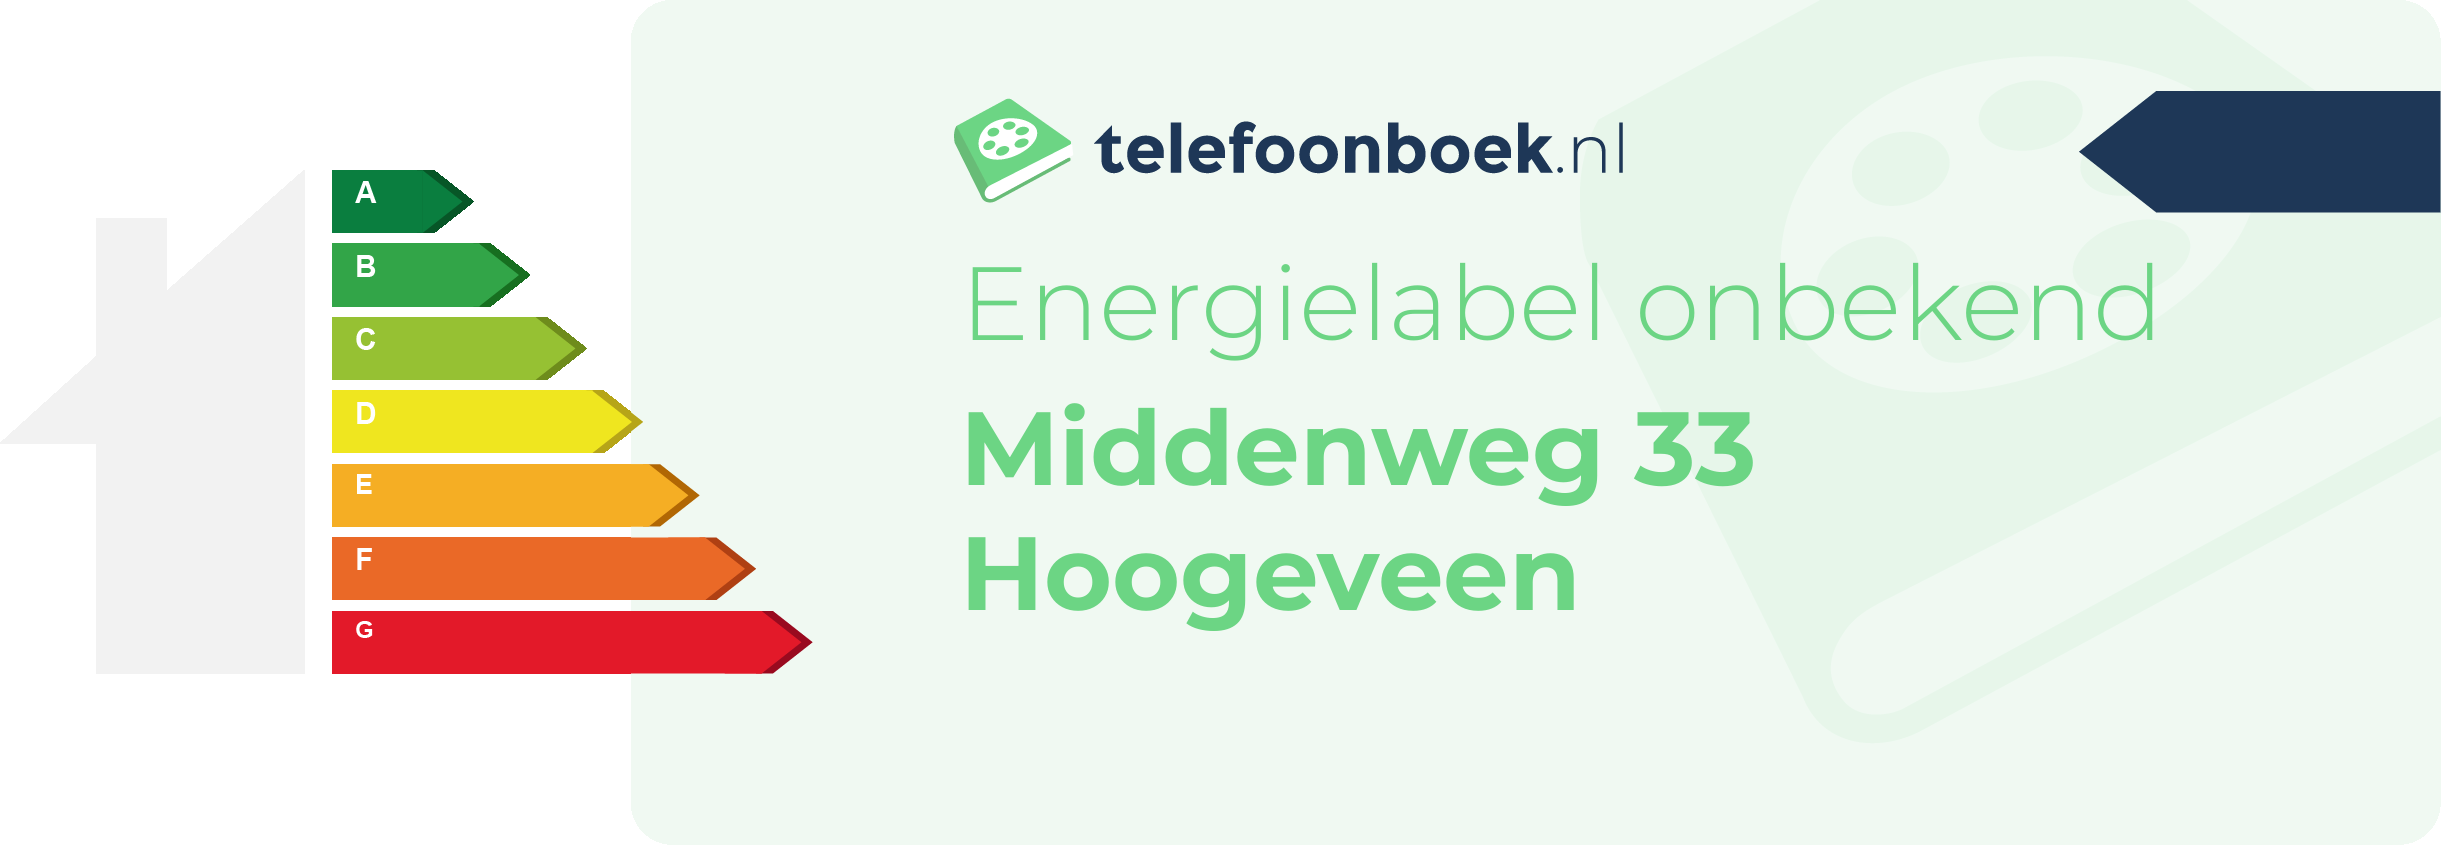 Energielabel Middenweg 33 Hoogeveen